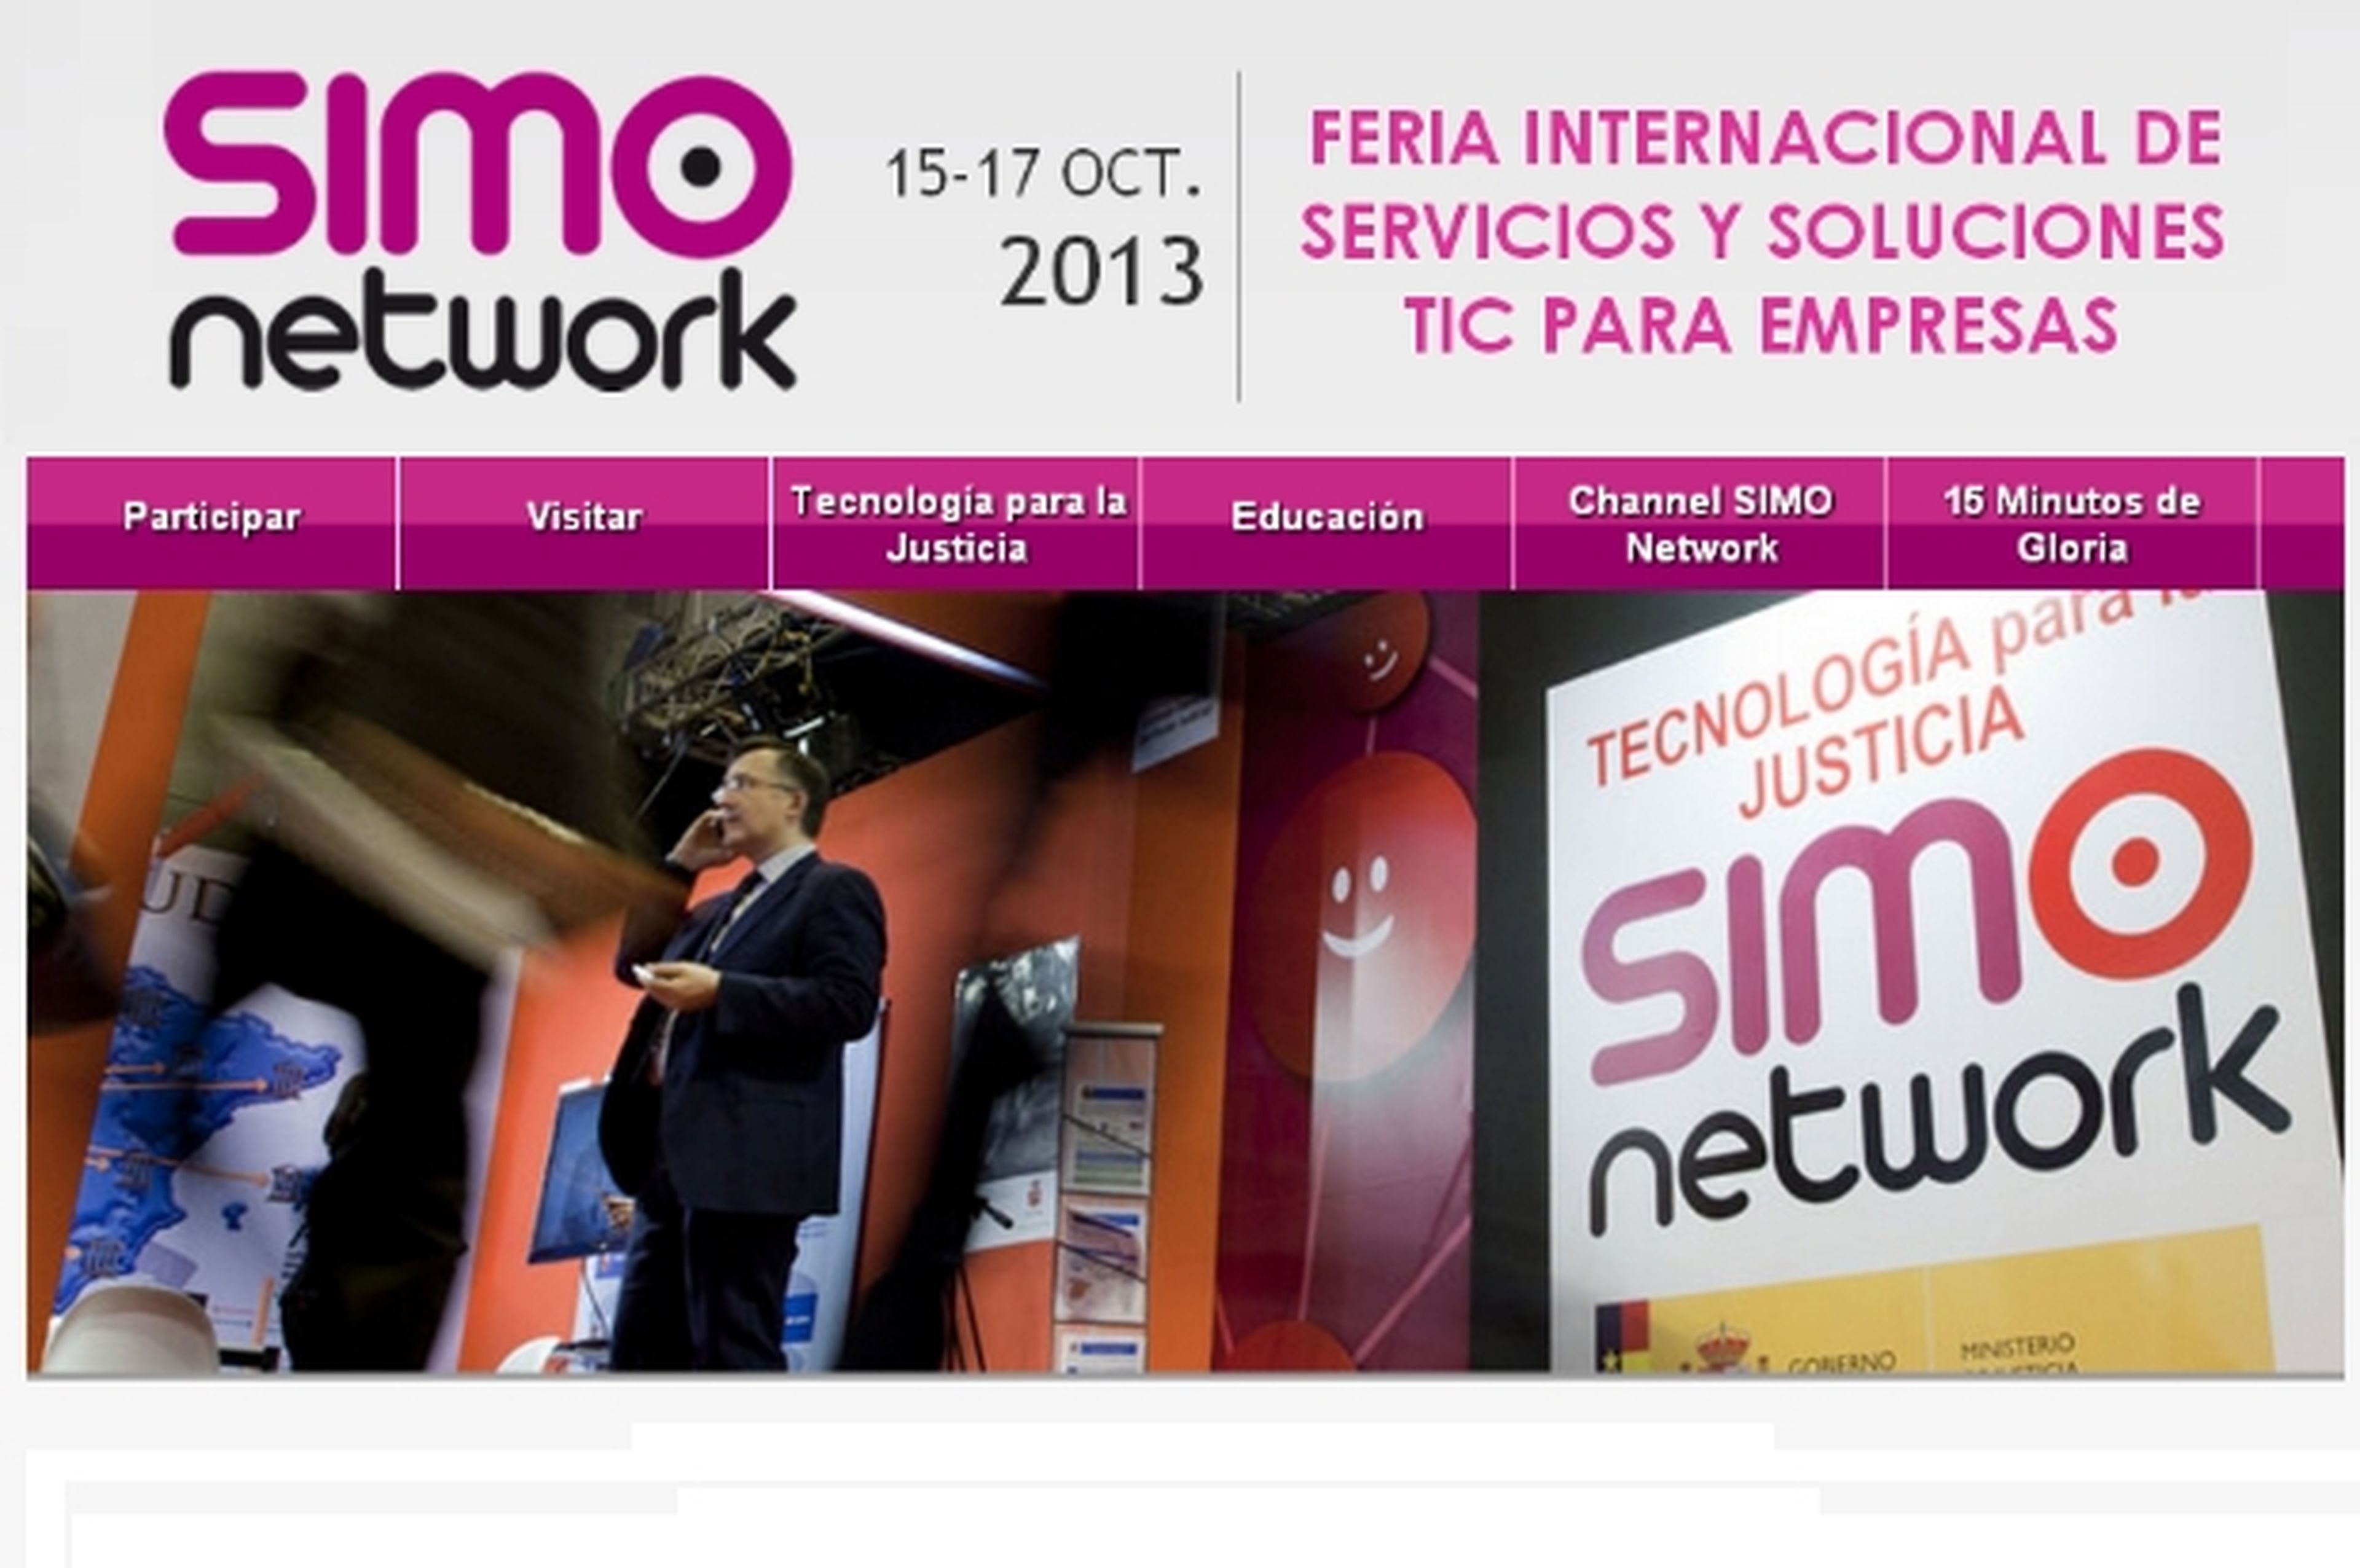 La feria SIMO Network 2013, la feria sobre TIC para empresas y educación, del 15 al 17 de octubre en IFEMA Madrid